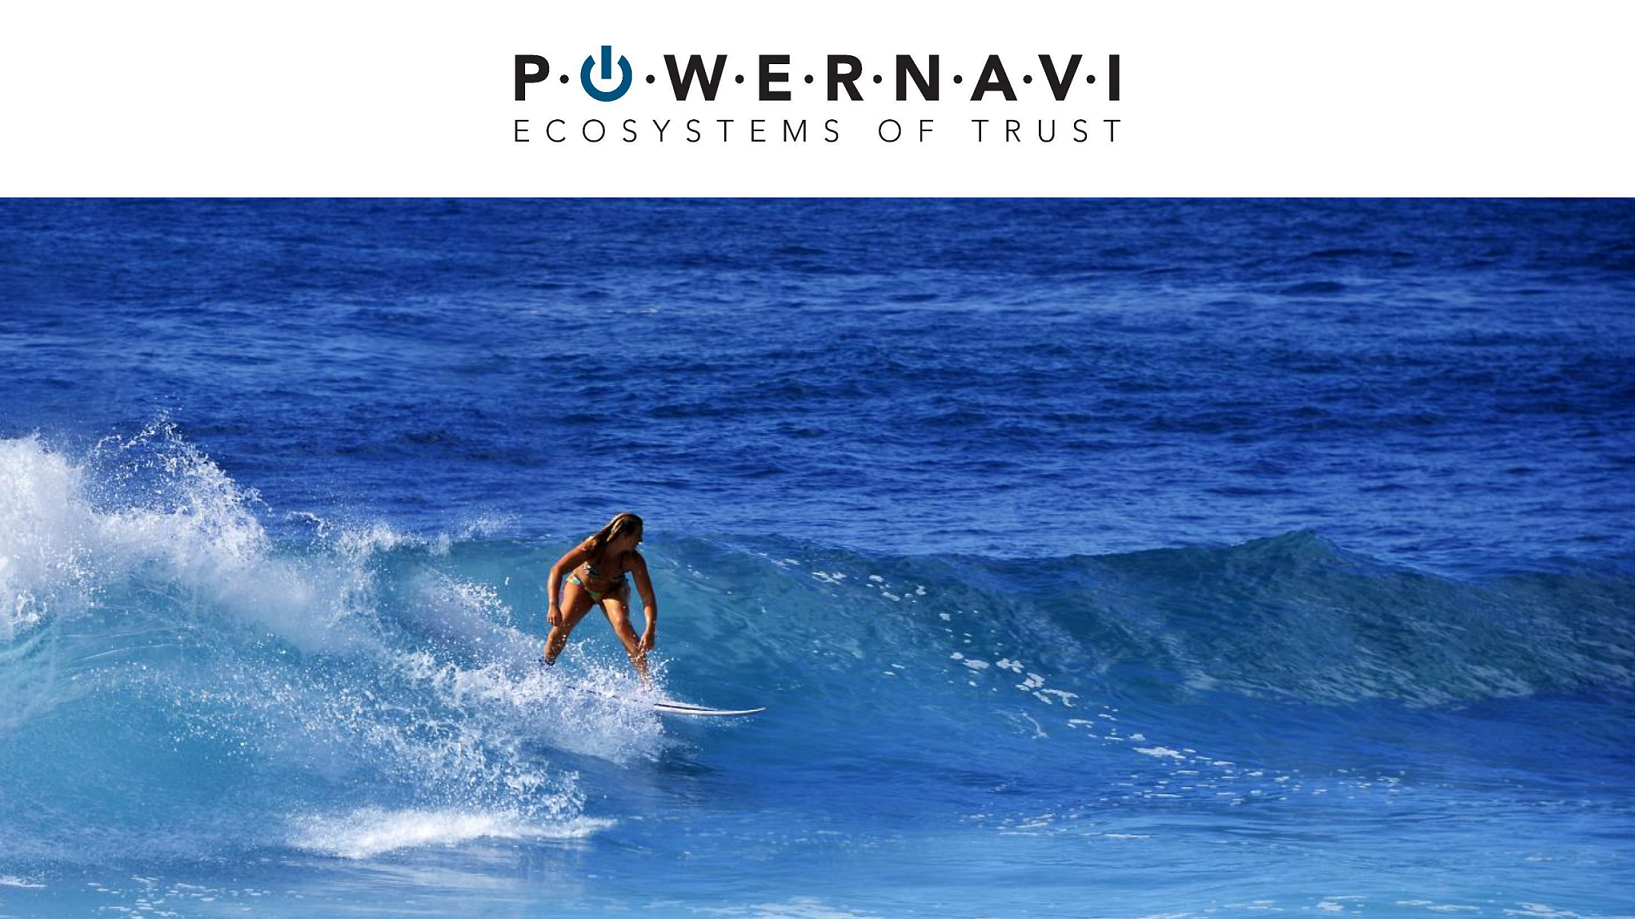 VUCA Wellen-Reiten geniessen @ powernavi ecosystems of trust